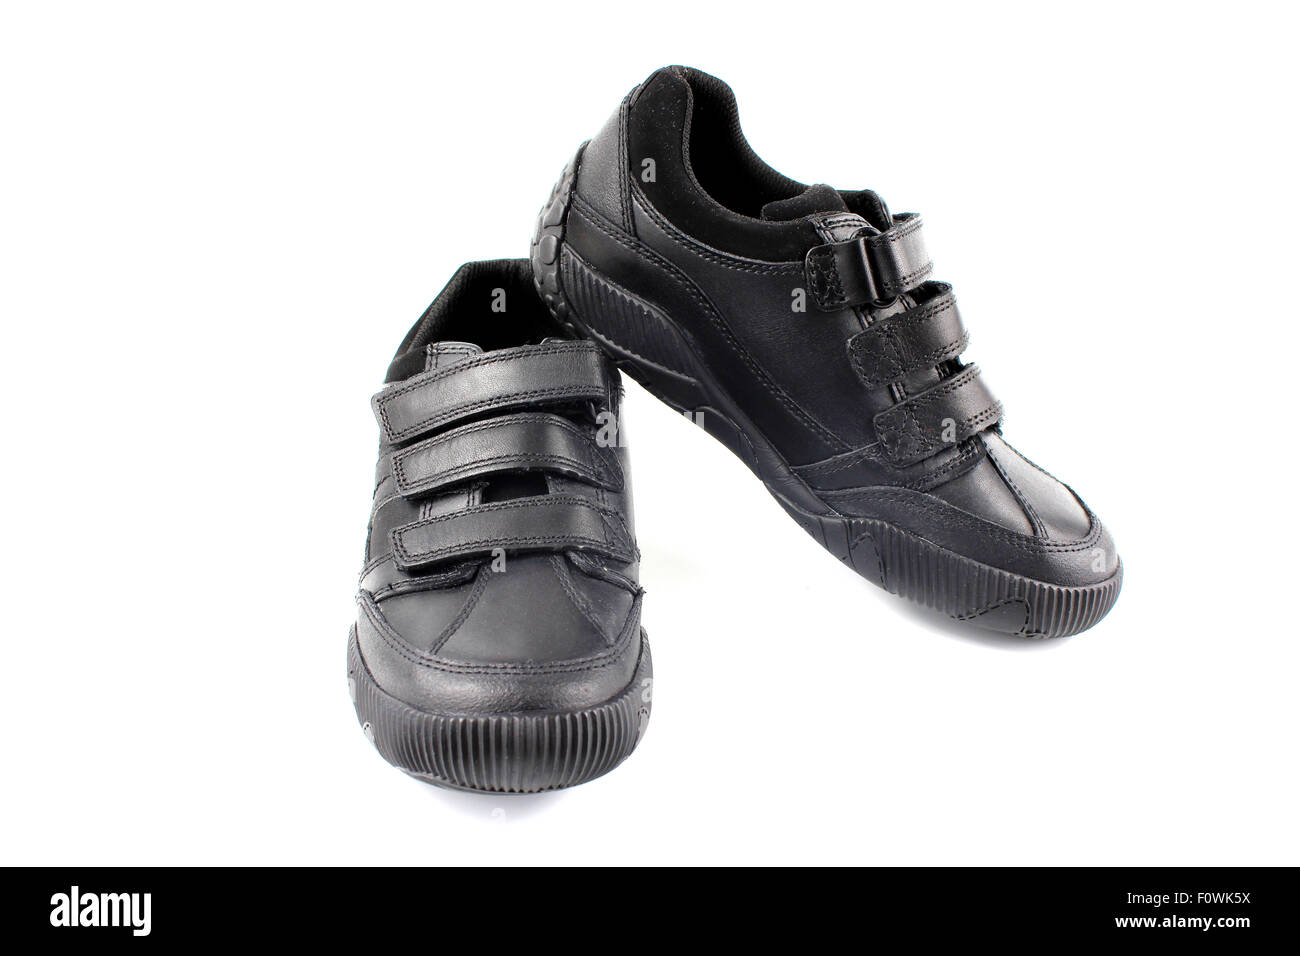 Niños calzado escolar negro nuevo Fotografía de stock - Alamy